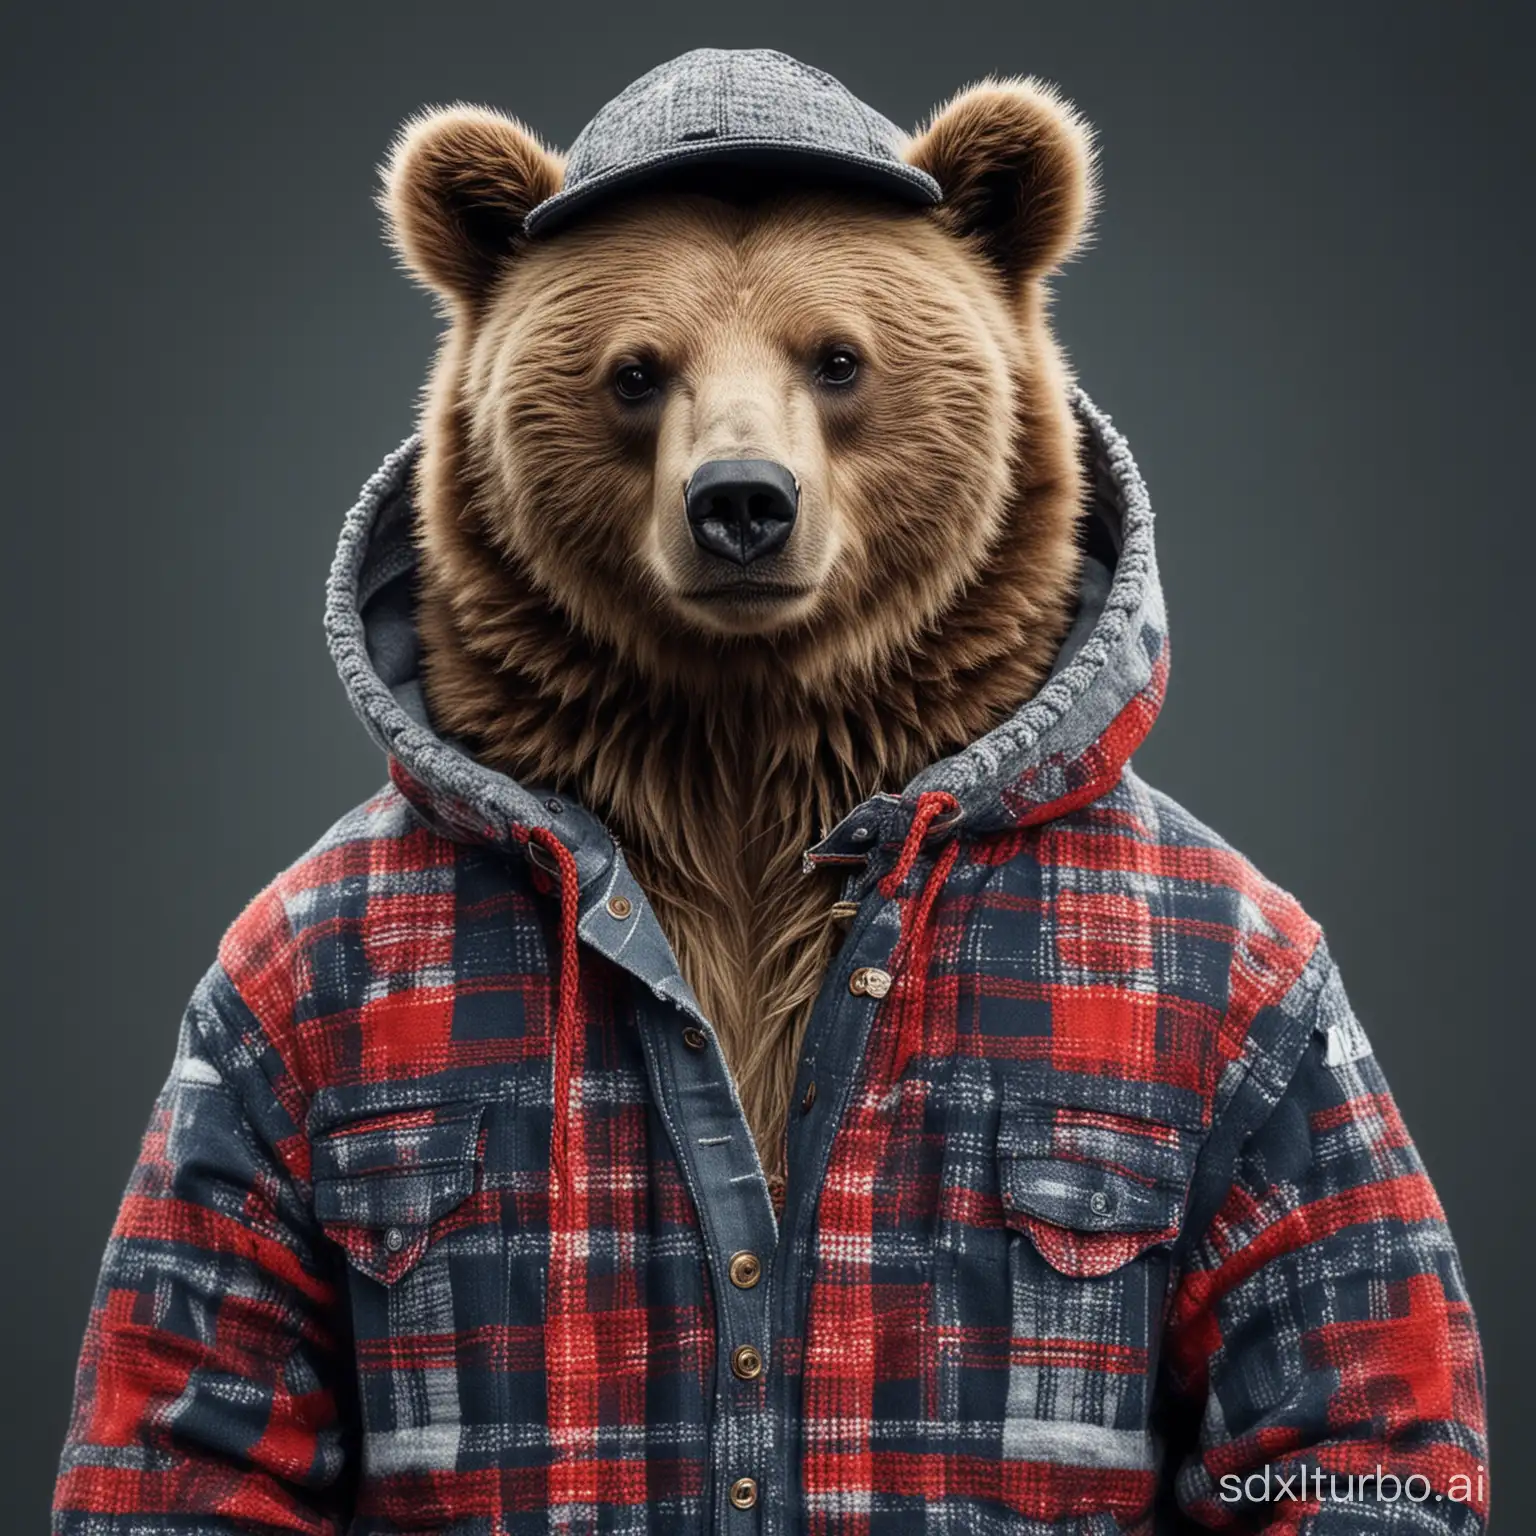 Fashionable-Bear-Wearing-Stylish-Attire